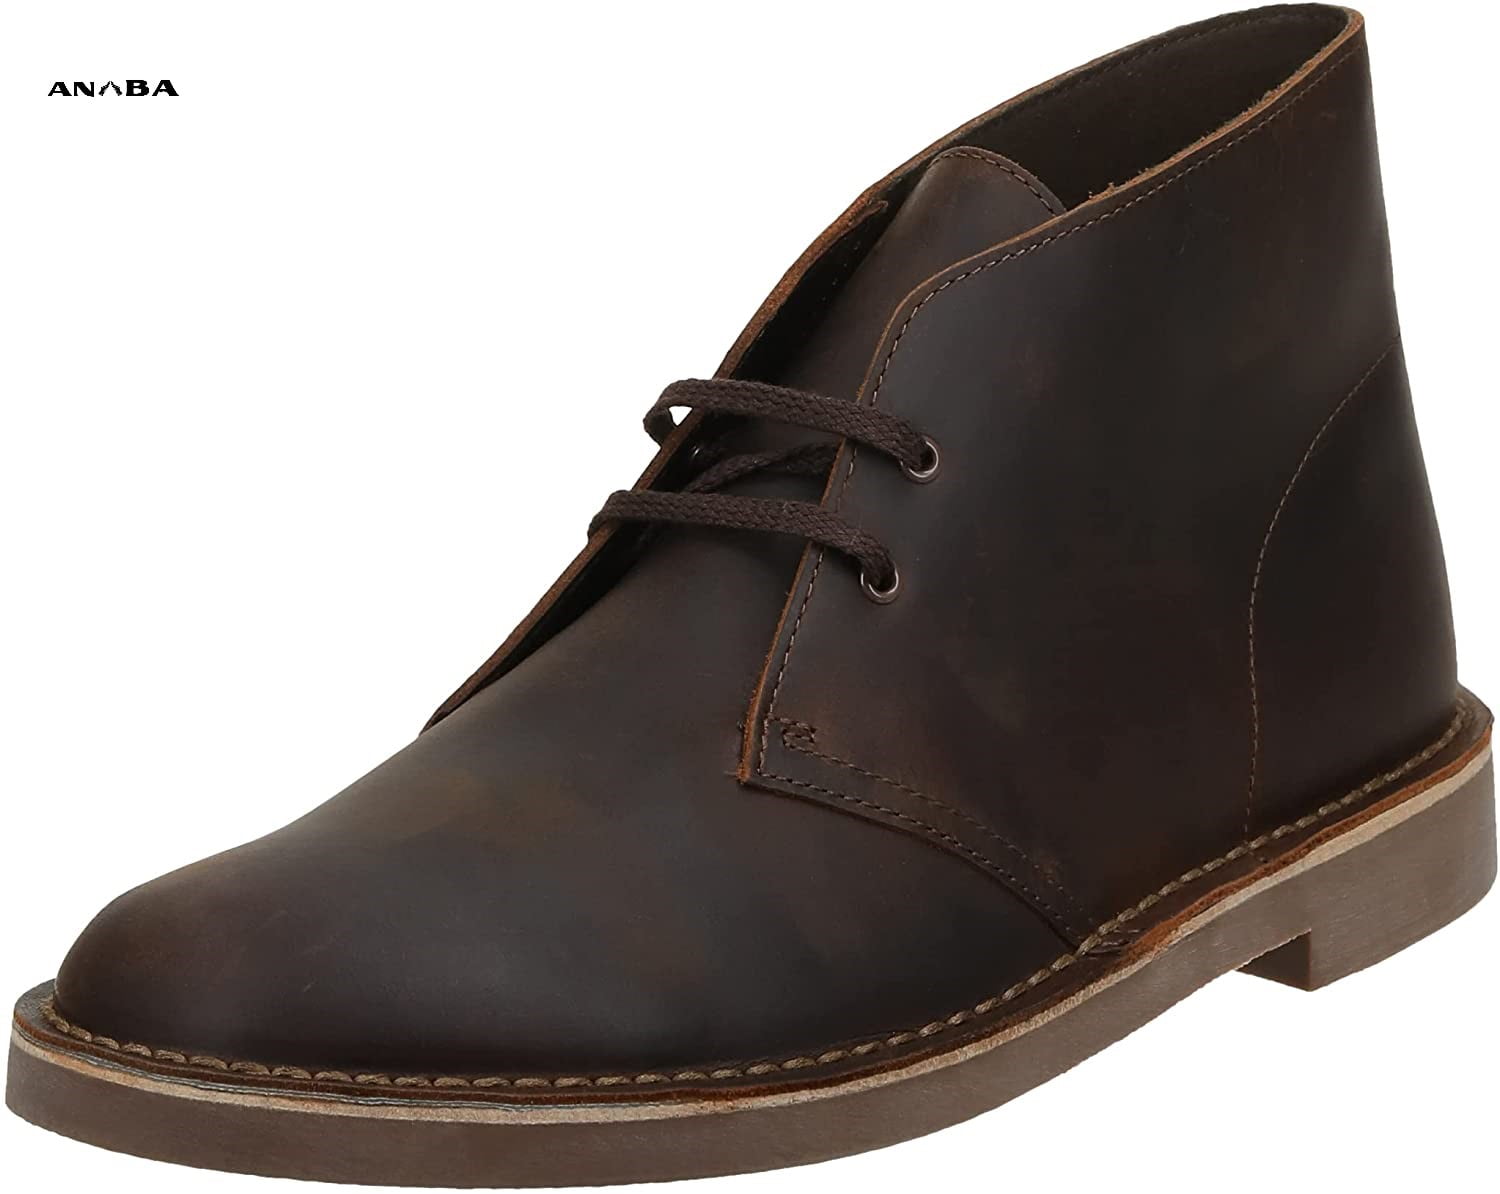 Giày boot da nam cao cổ thông thường sẽ được đóng bằng tay, và sử dụng da bò thật